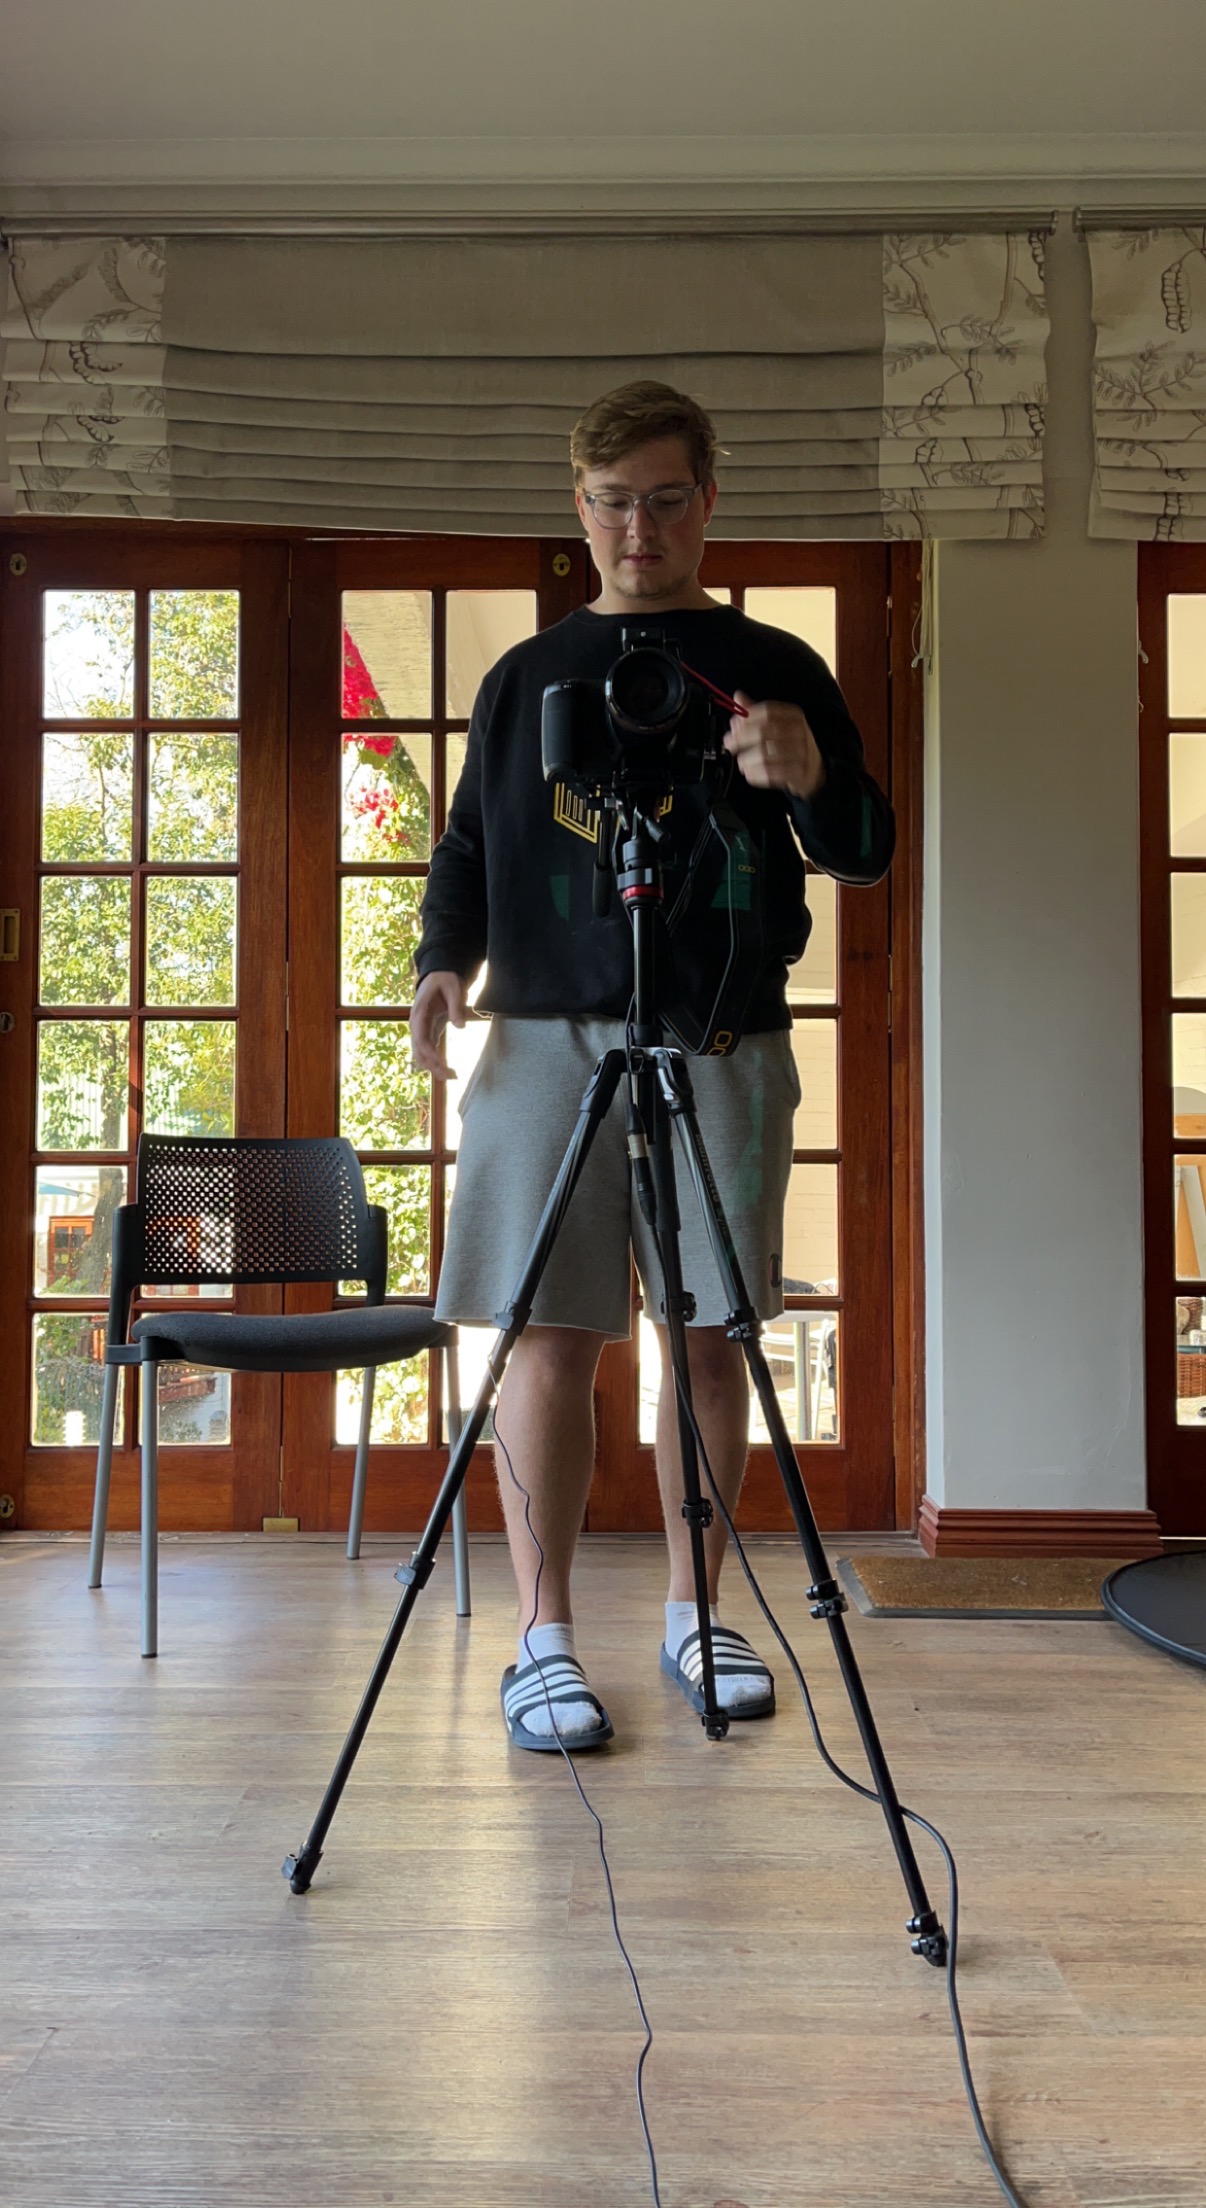 Filming Roomie Interviews